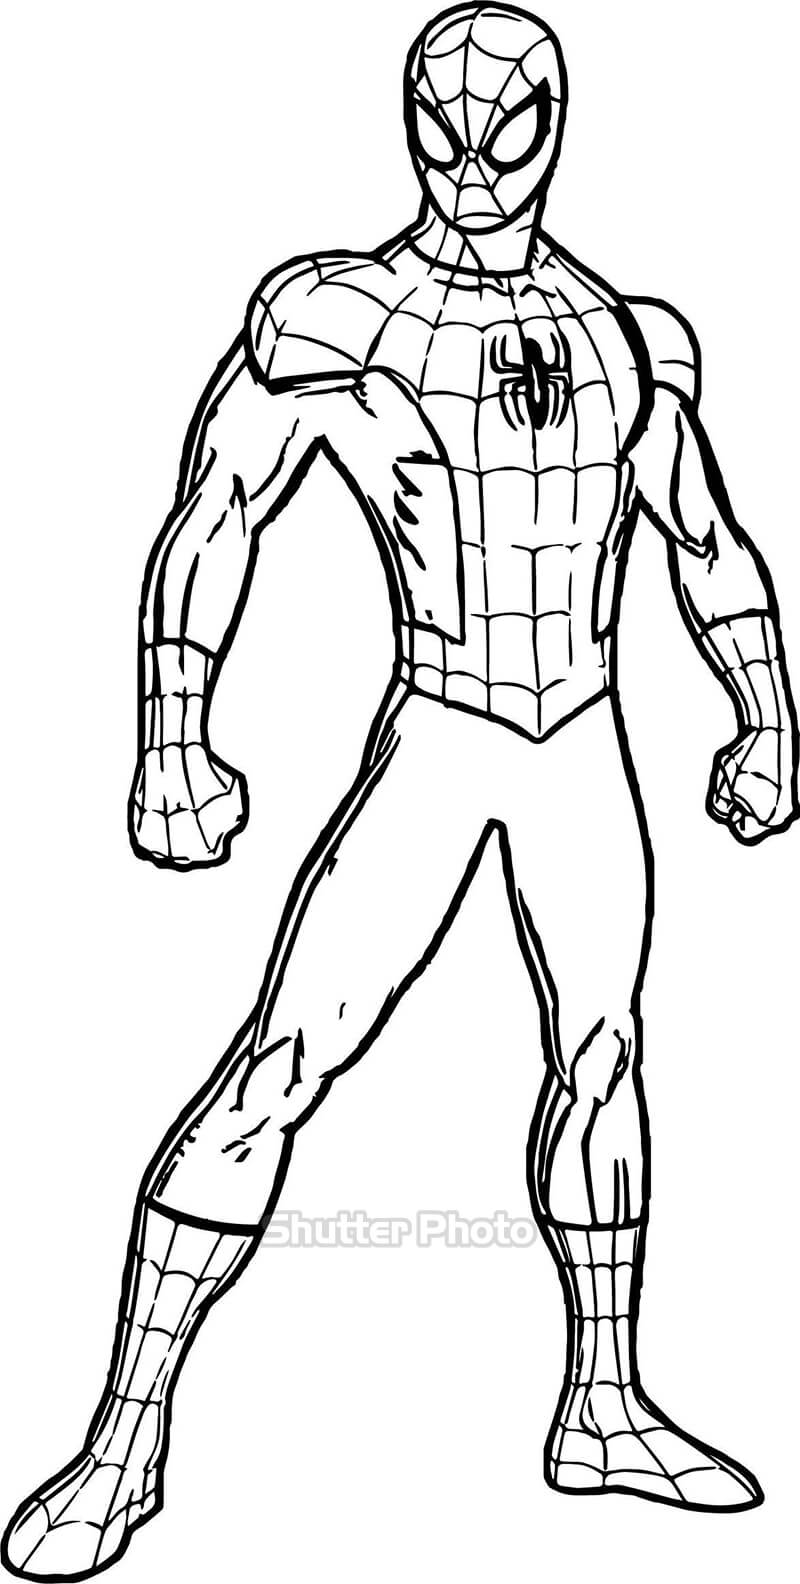 Vẽ Người Nhện  Siêu Nhân Anh Hùng Bé Thích Mê  How to draw spiderman   YouTube